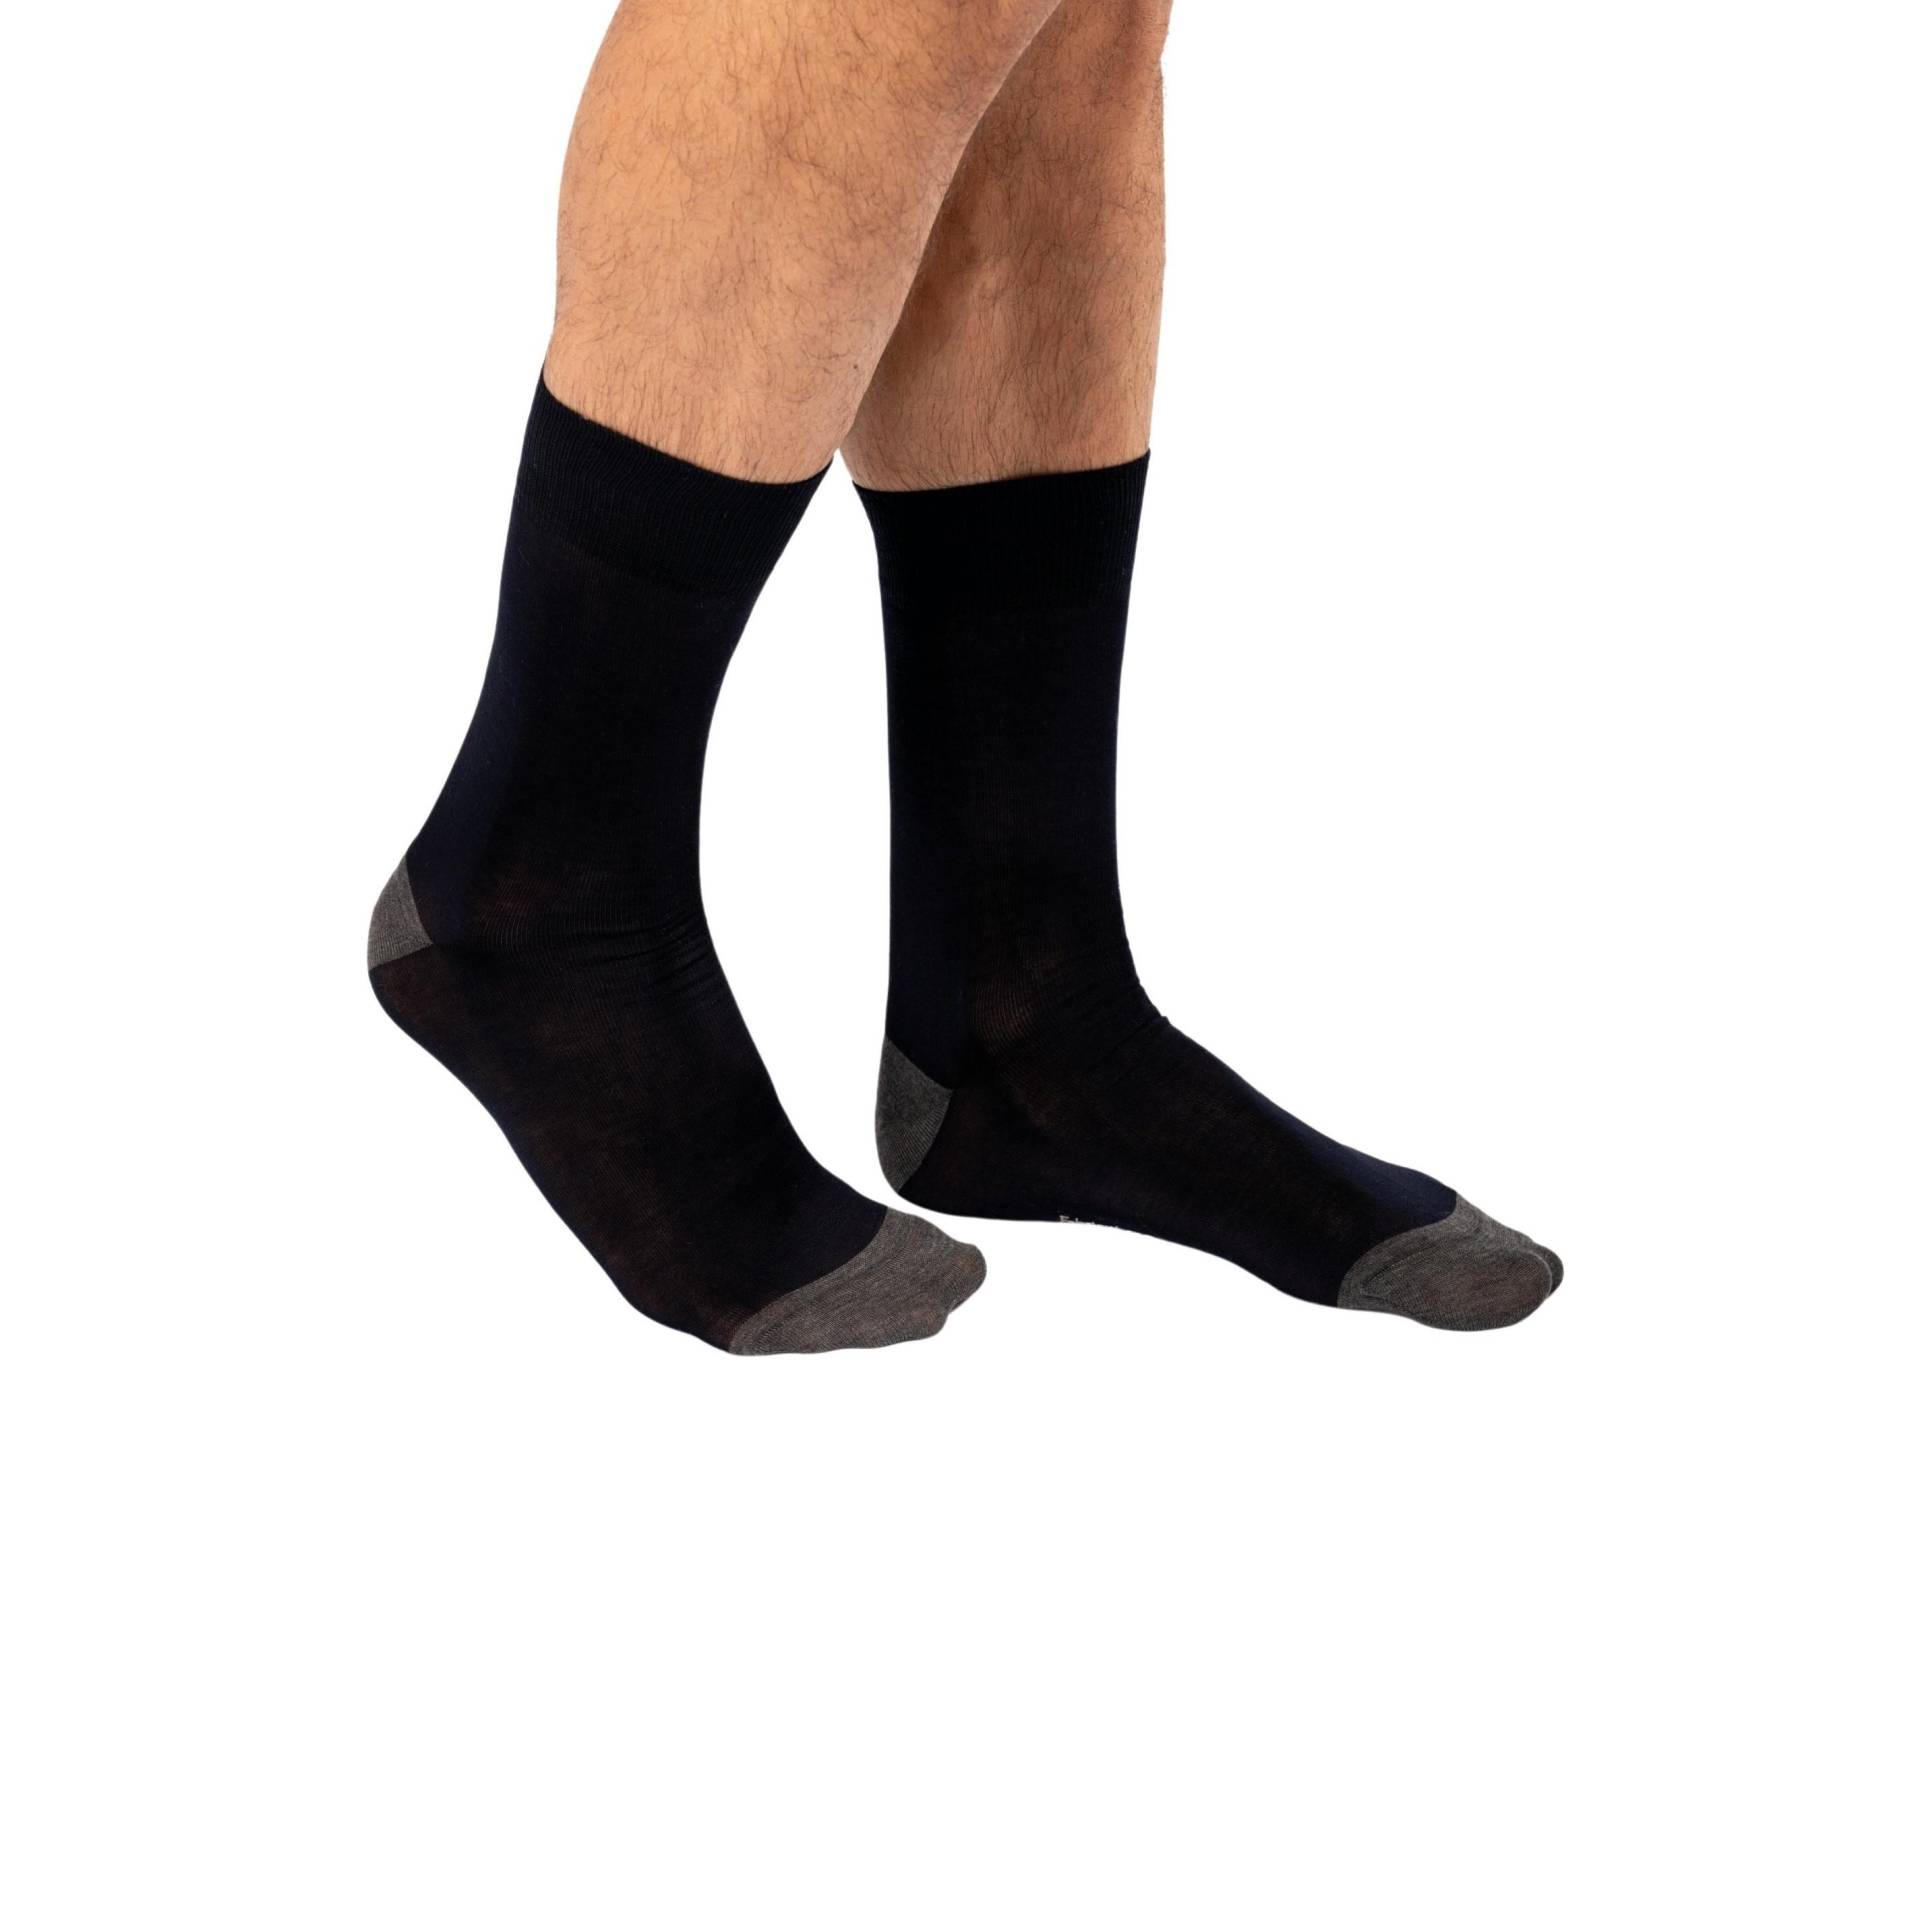 Halbhohe Socken Aus Mercerisierter Baumwolle Origine France Garantiert Herren  39-42 von Kariban